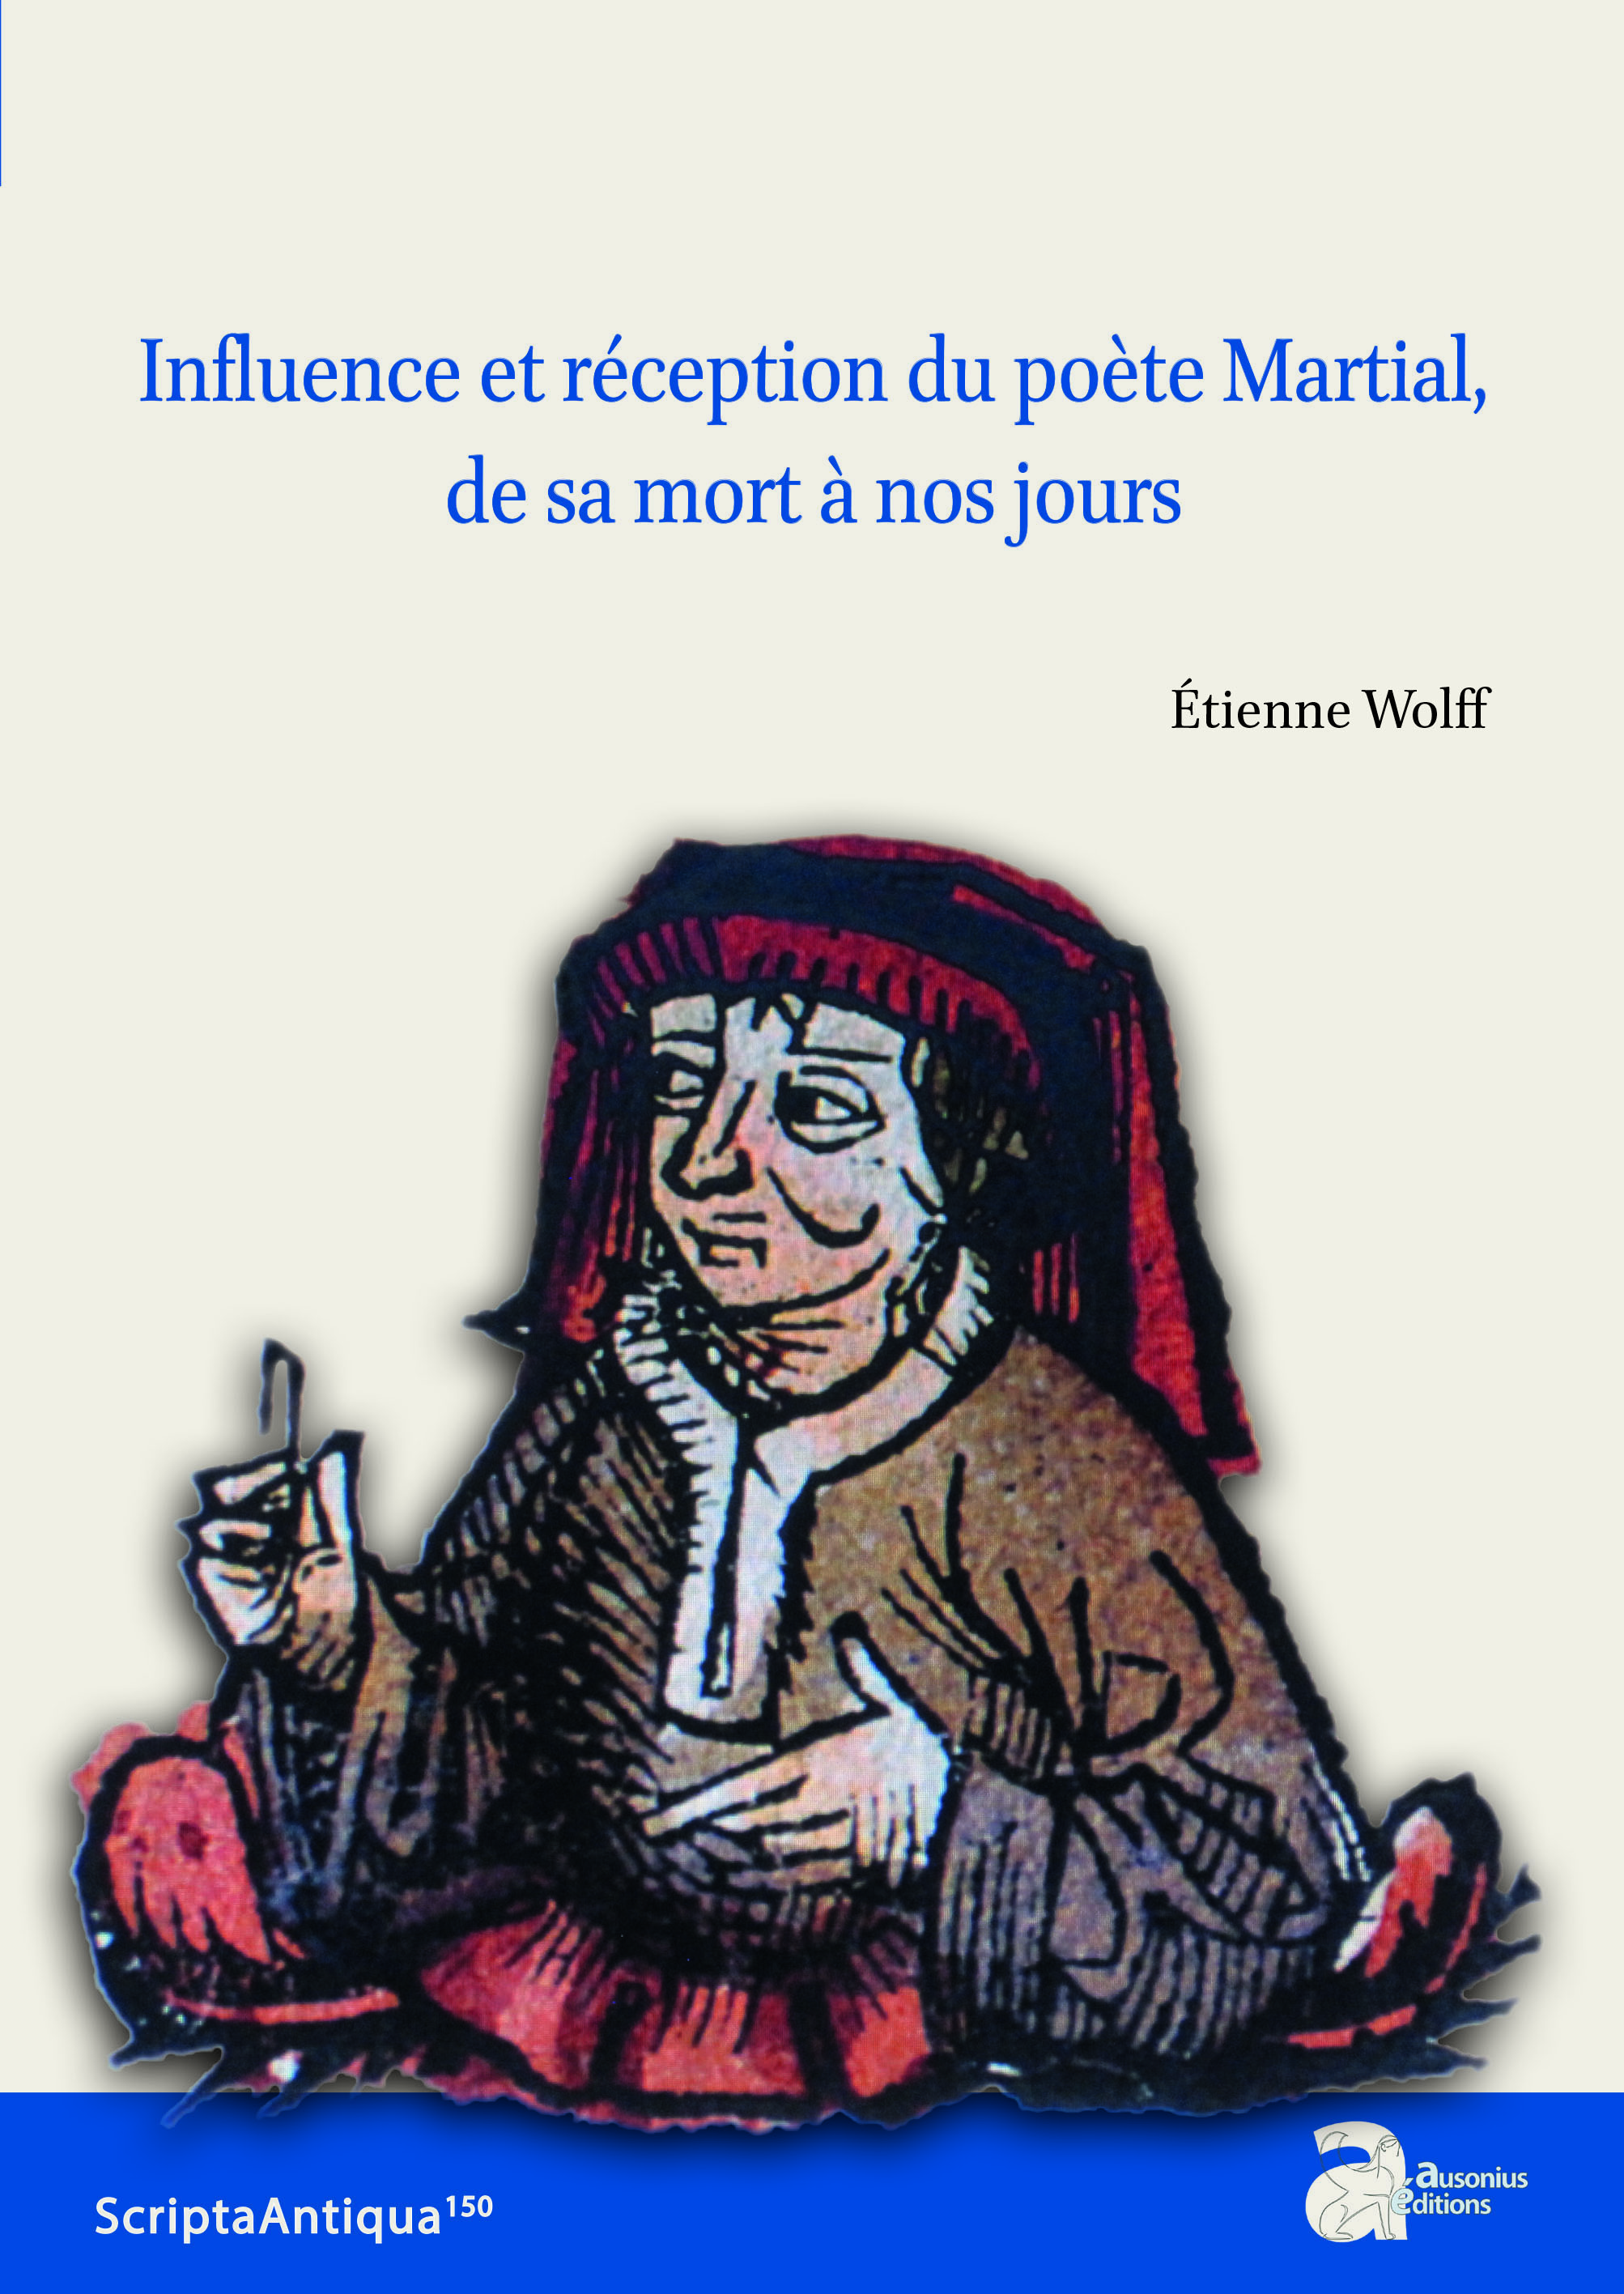 Influence et réception du poète Martial, de sa mort à nos jours, 2022, 390 p.